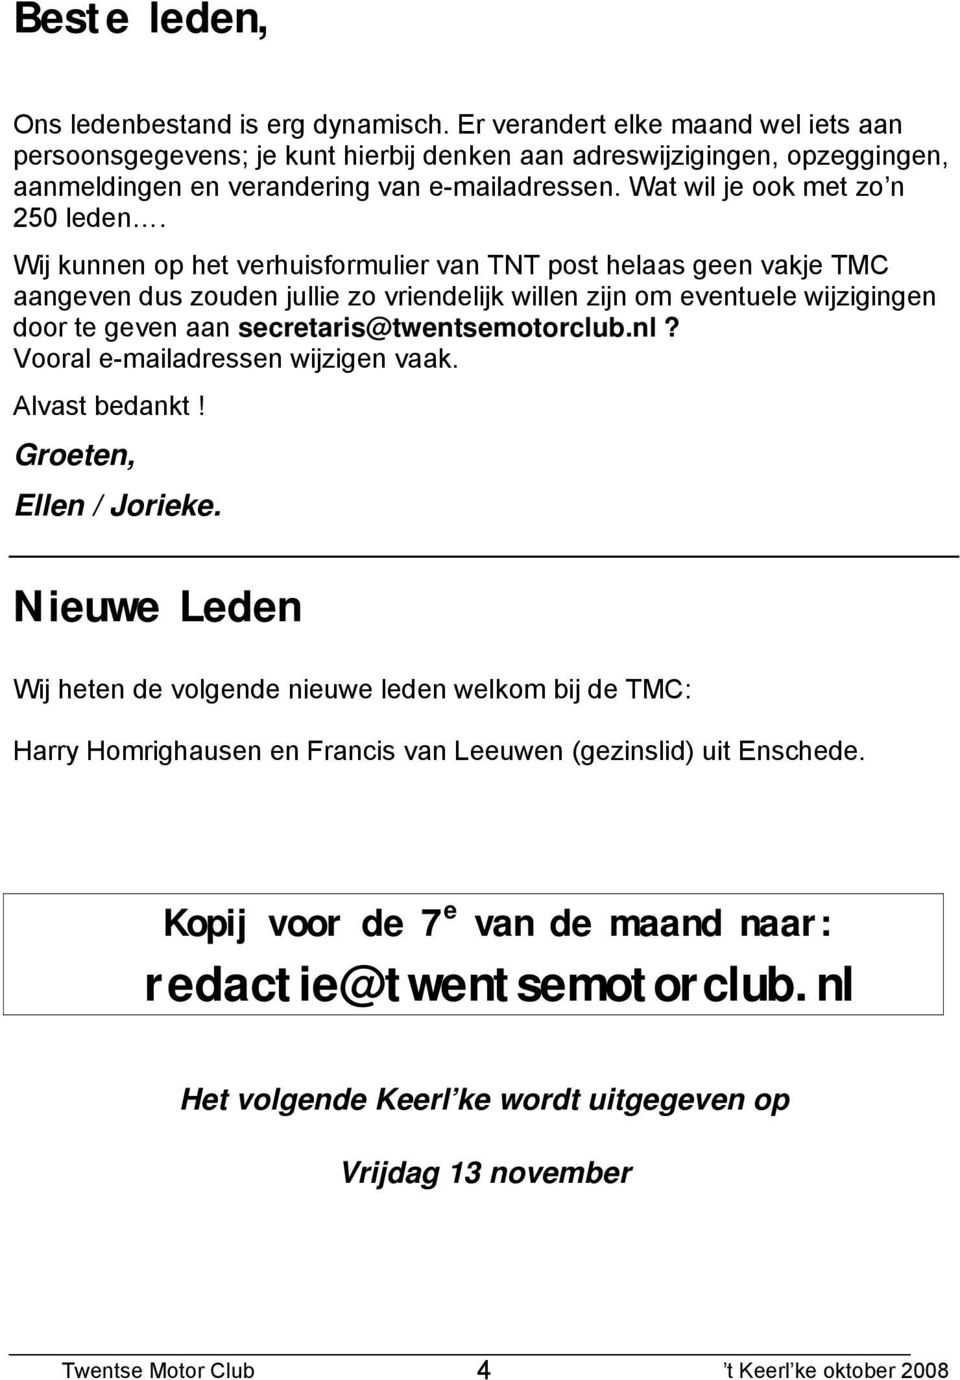 Wij kunnen op het verhuisformulier van TNT post helaas geen vakje TMC aangeven dus zouden jullie zo vriendelijk willen zijn om eventuele wijzigingen door te geven aan secretaris@twentsemotorclub.nl?